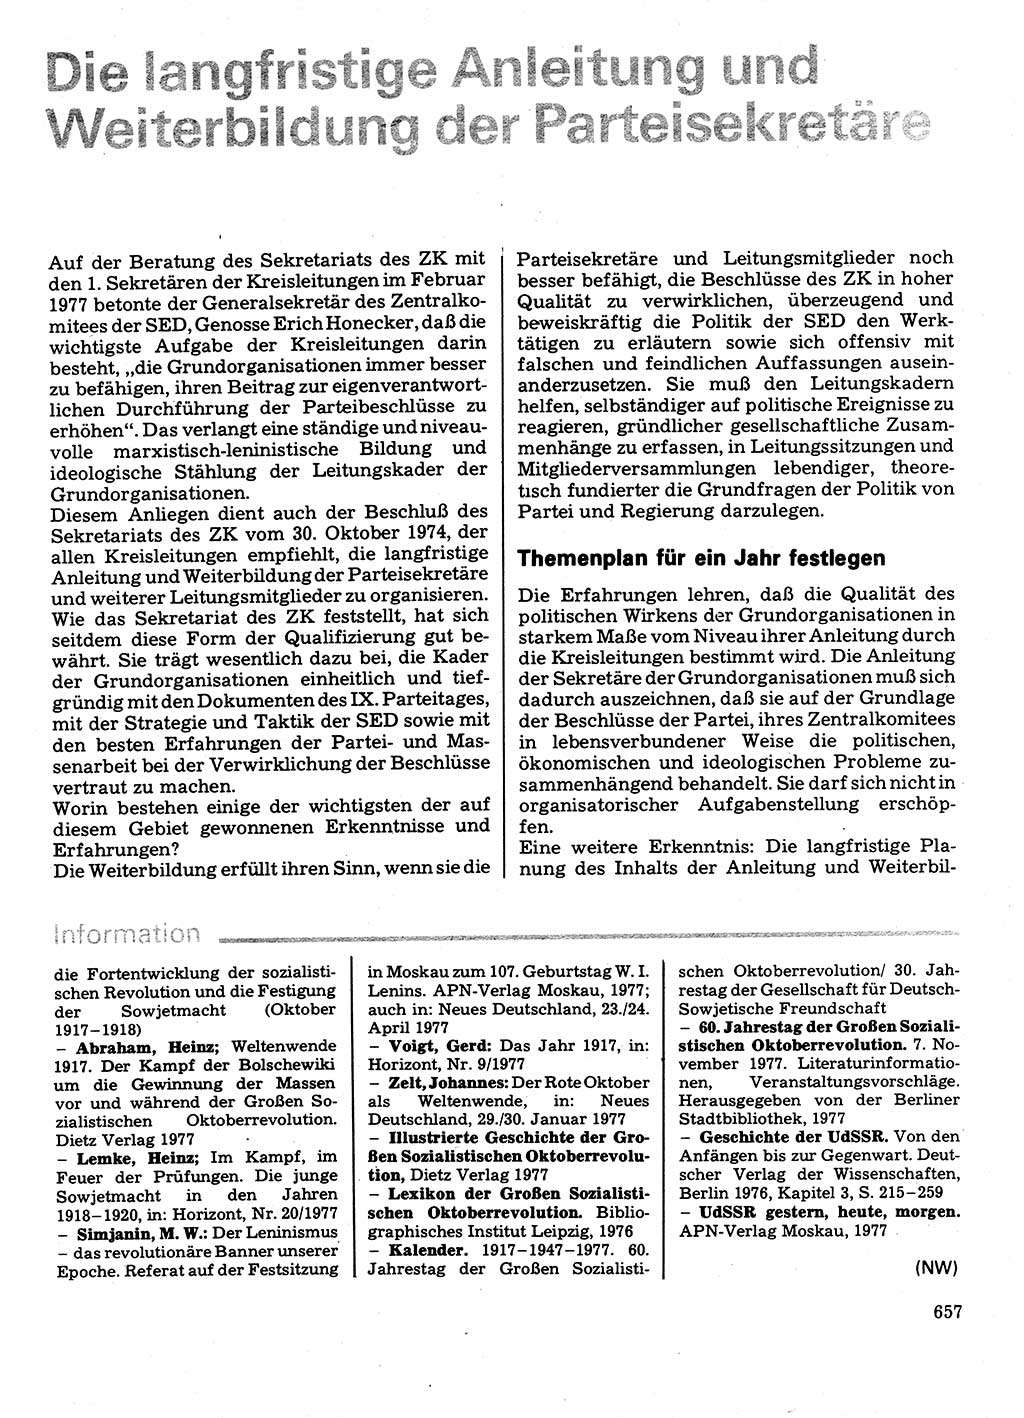 Neuer Weg (NW), Organ des Zentralkomitees (ZK) der SED (Sozialistische Einheitspartei Deutschlands) für Fragen des Parteilebens, 32. Jahrgang [Deutsche Demokratische Republik (DDR)] 1977, Seite 657 (NW ZK SED DDR 1977, S. 657)